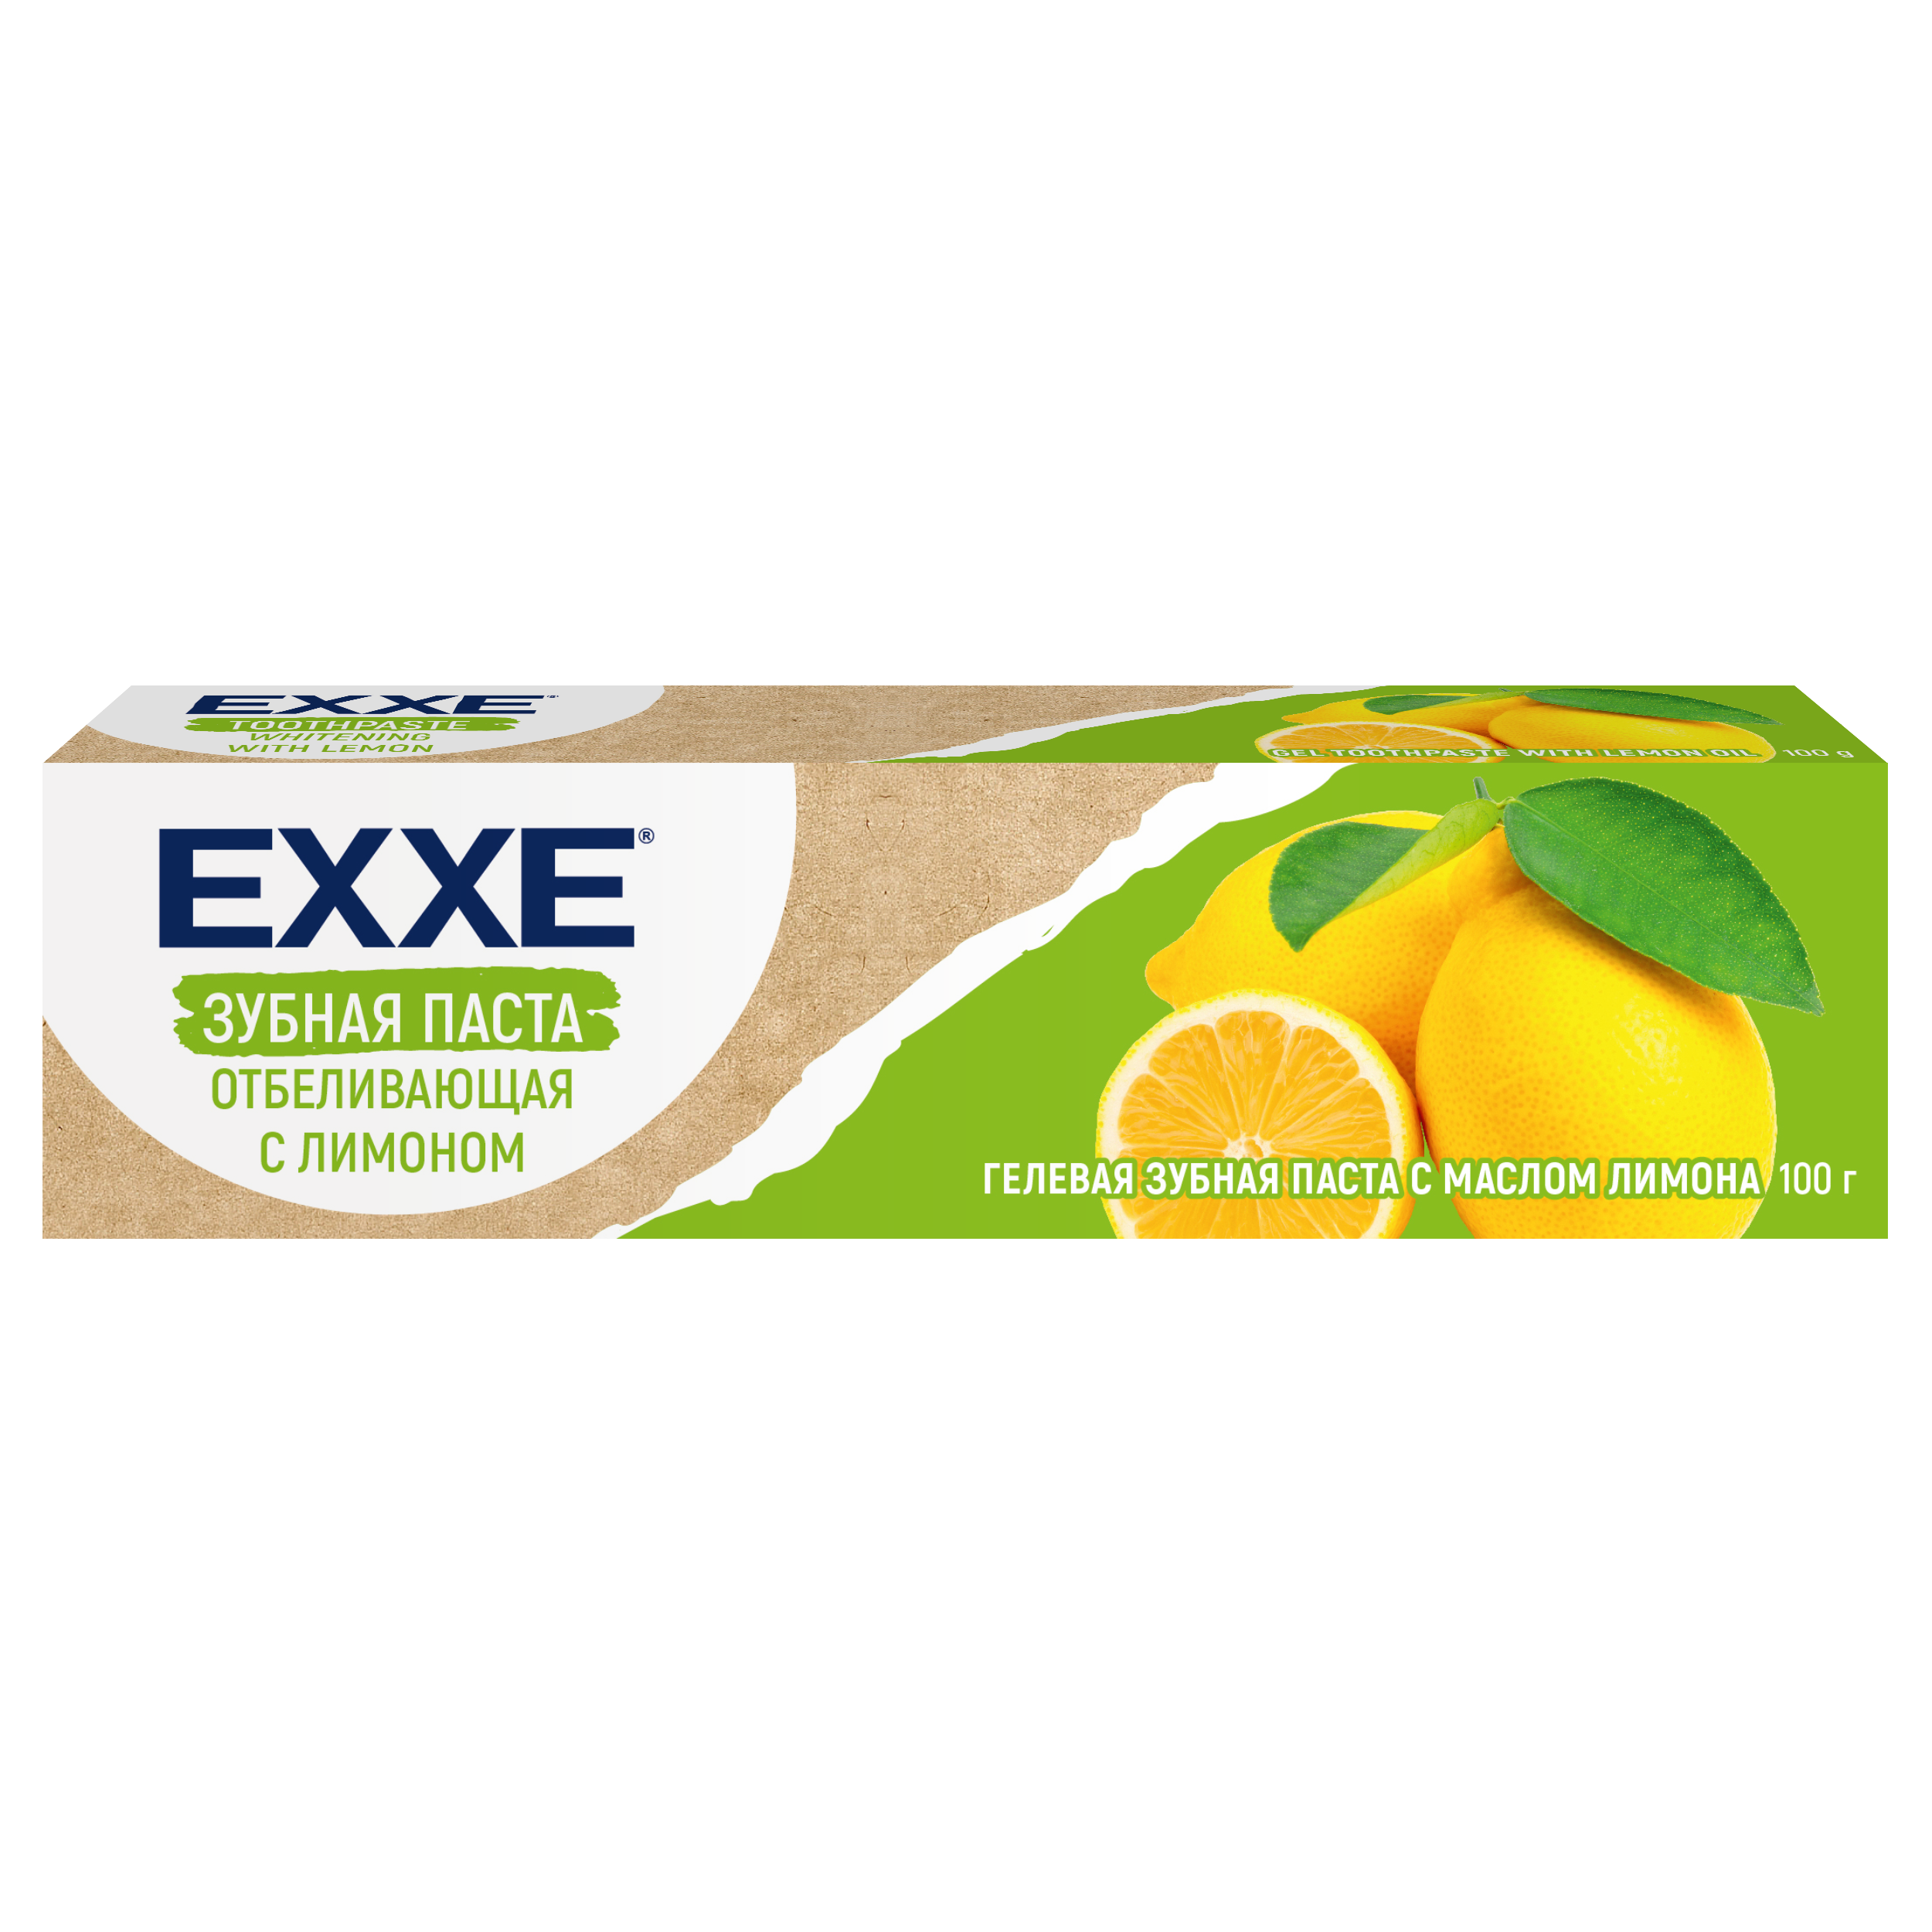 Зубная паста Exxe Отбеливающая с лимоном, 100 г зубная щетка exxe luxury фтор отбеливающая 1 шт